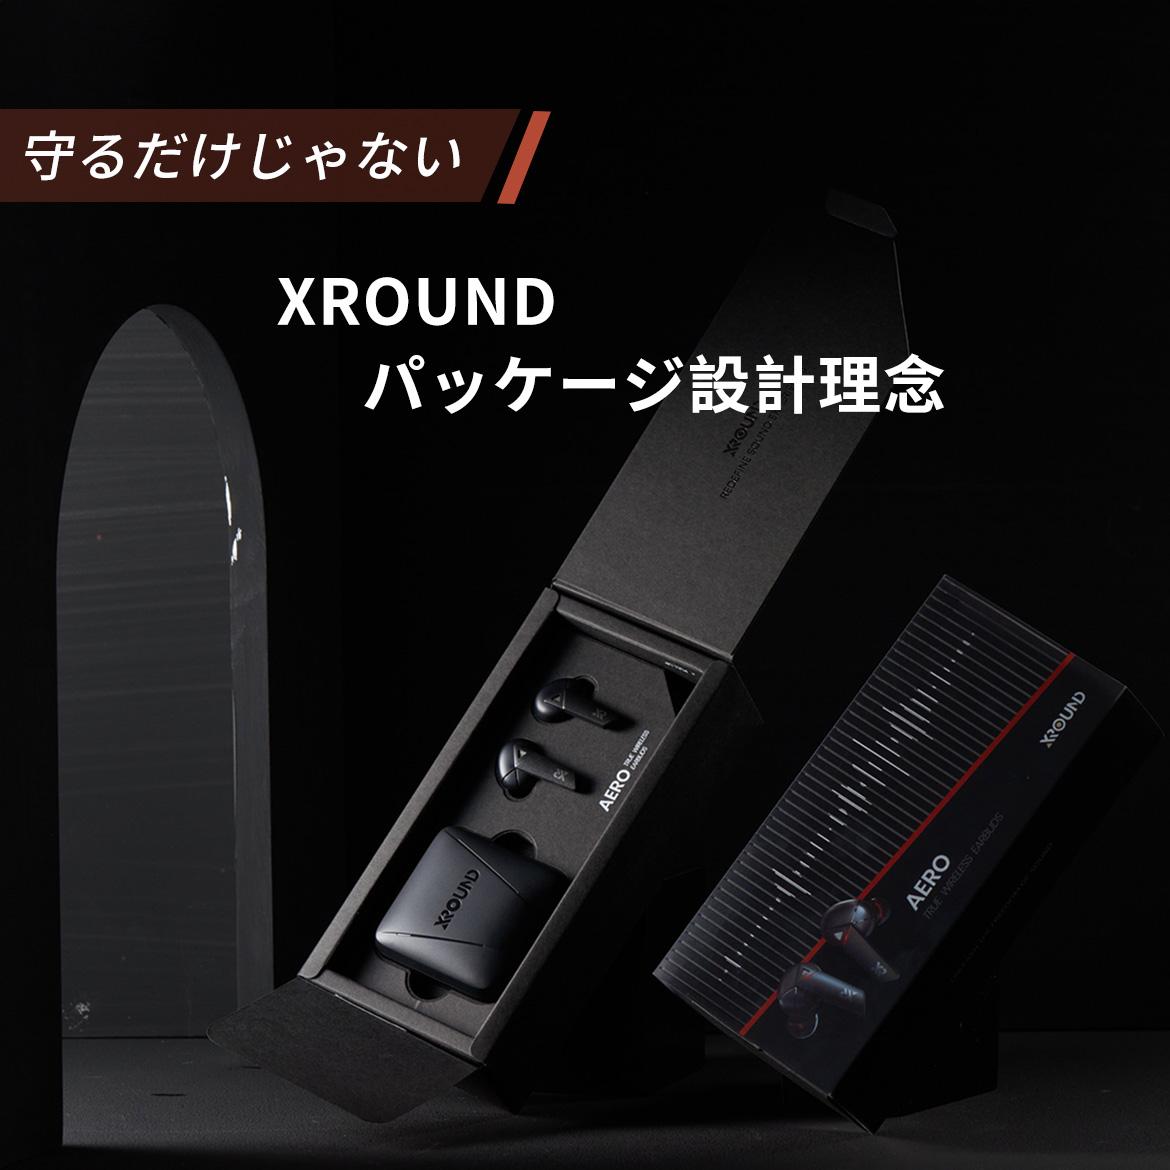 【守るだけじゃない】XROUNDのパッケージ設計理念